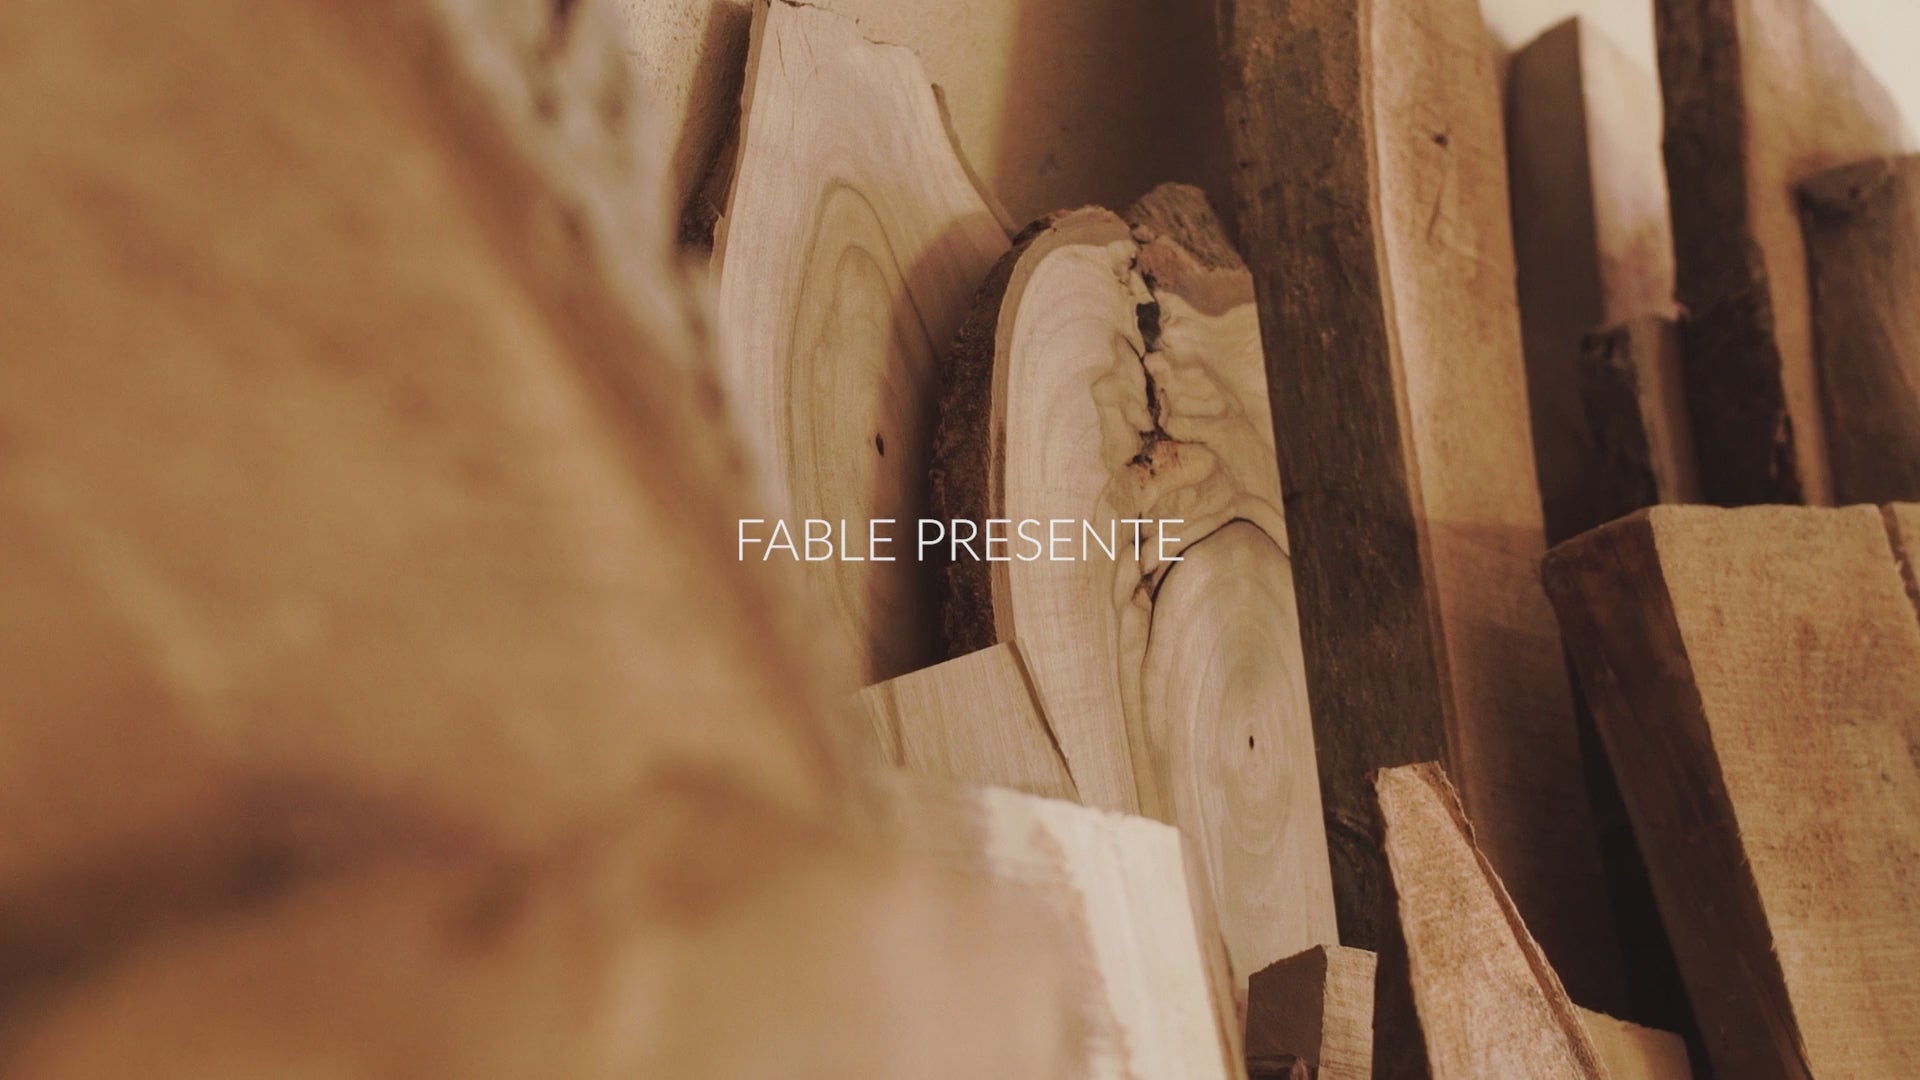 Cargar video: Vídeo Presentación Fábula - Fabricación de objetos de decoración de calidad